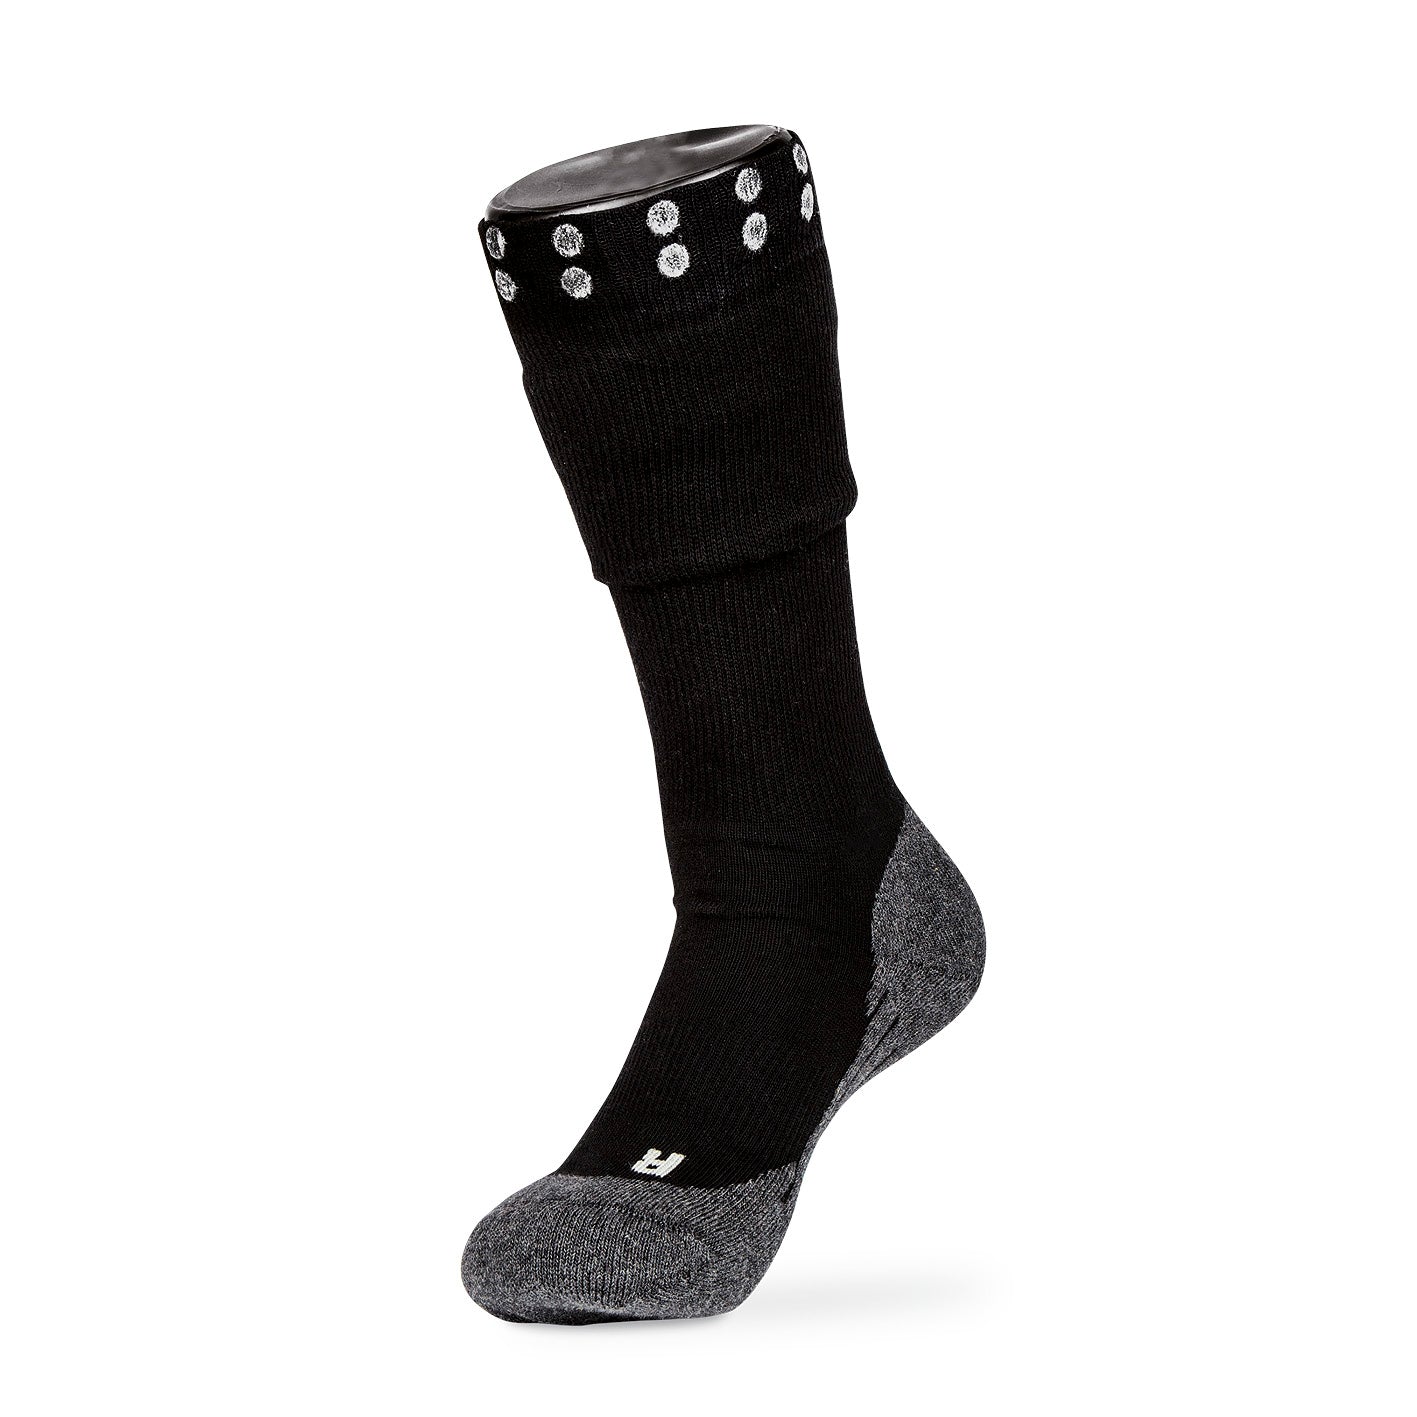 Funktions-Socke mit Doppelschaft - Größe 44-47